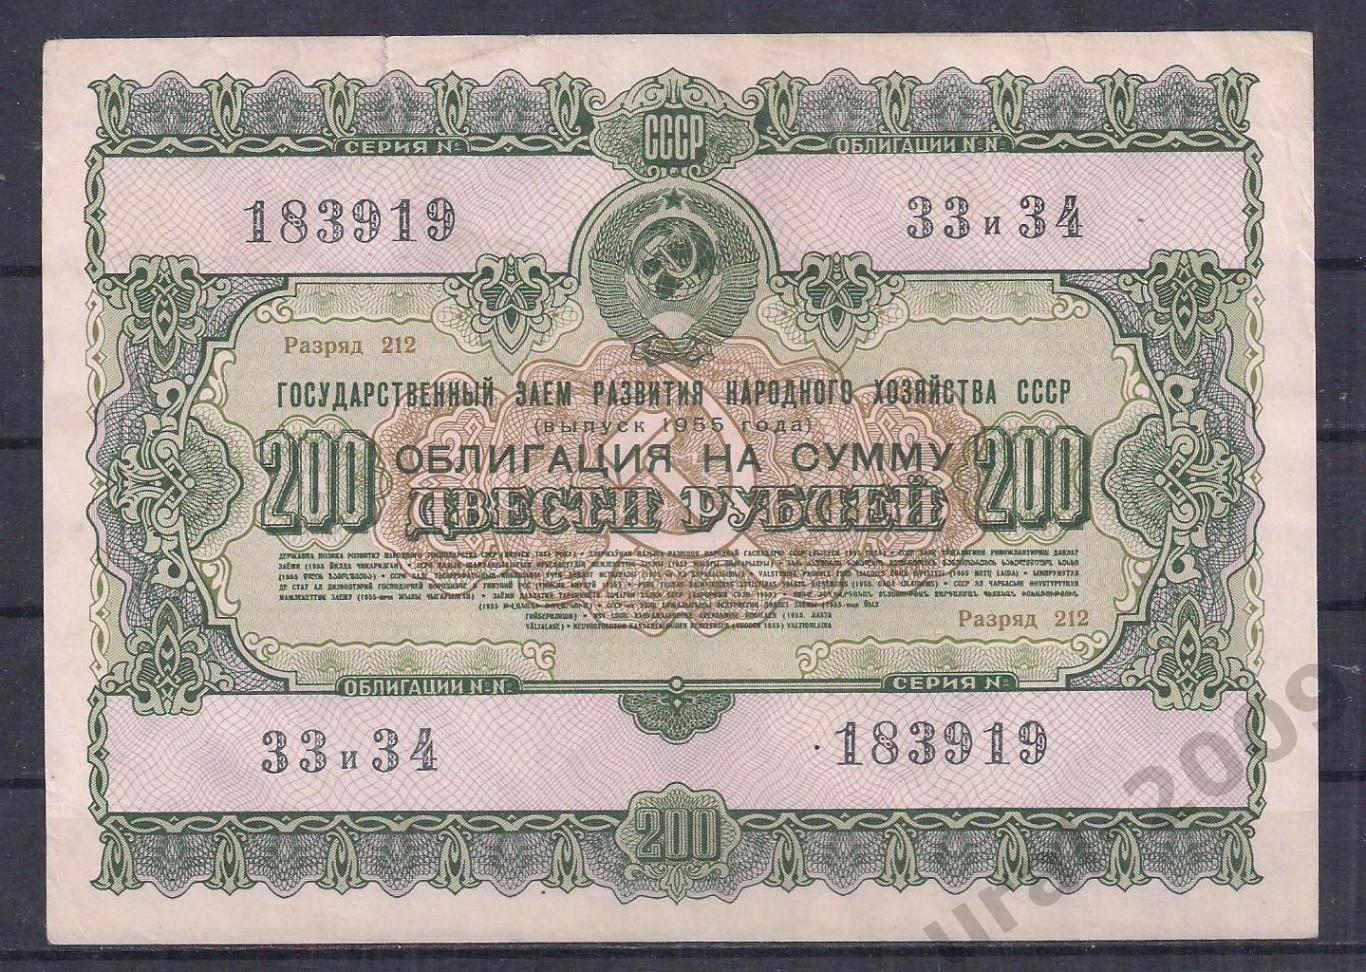 СССР, Облигация 200 рублей 1955 год! 183919.